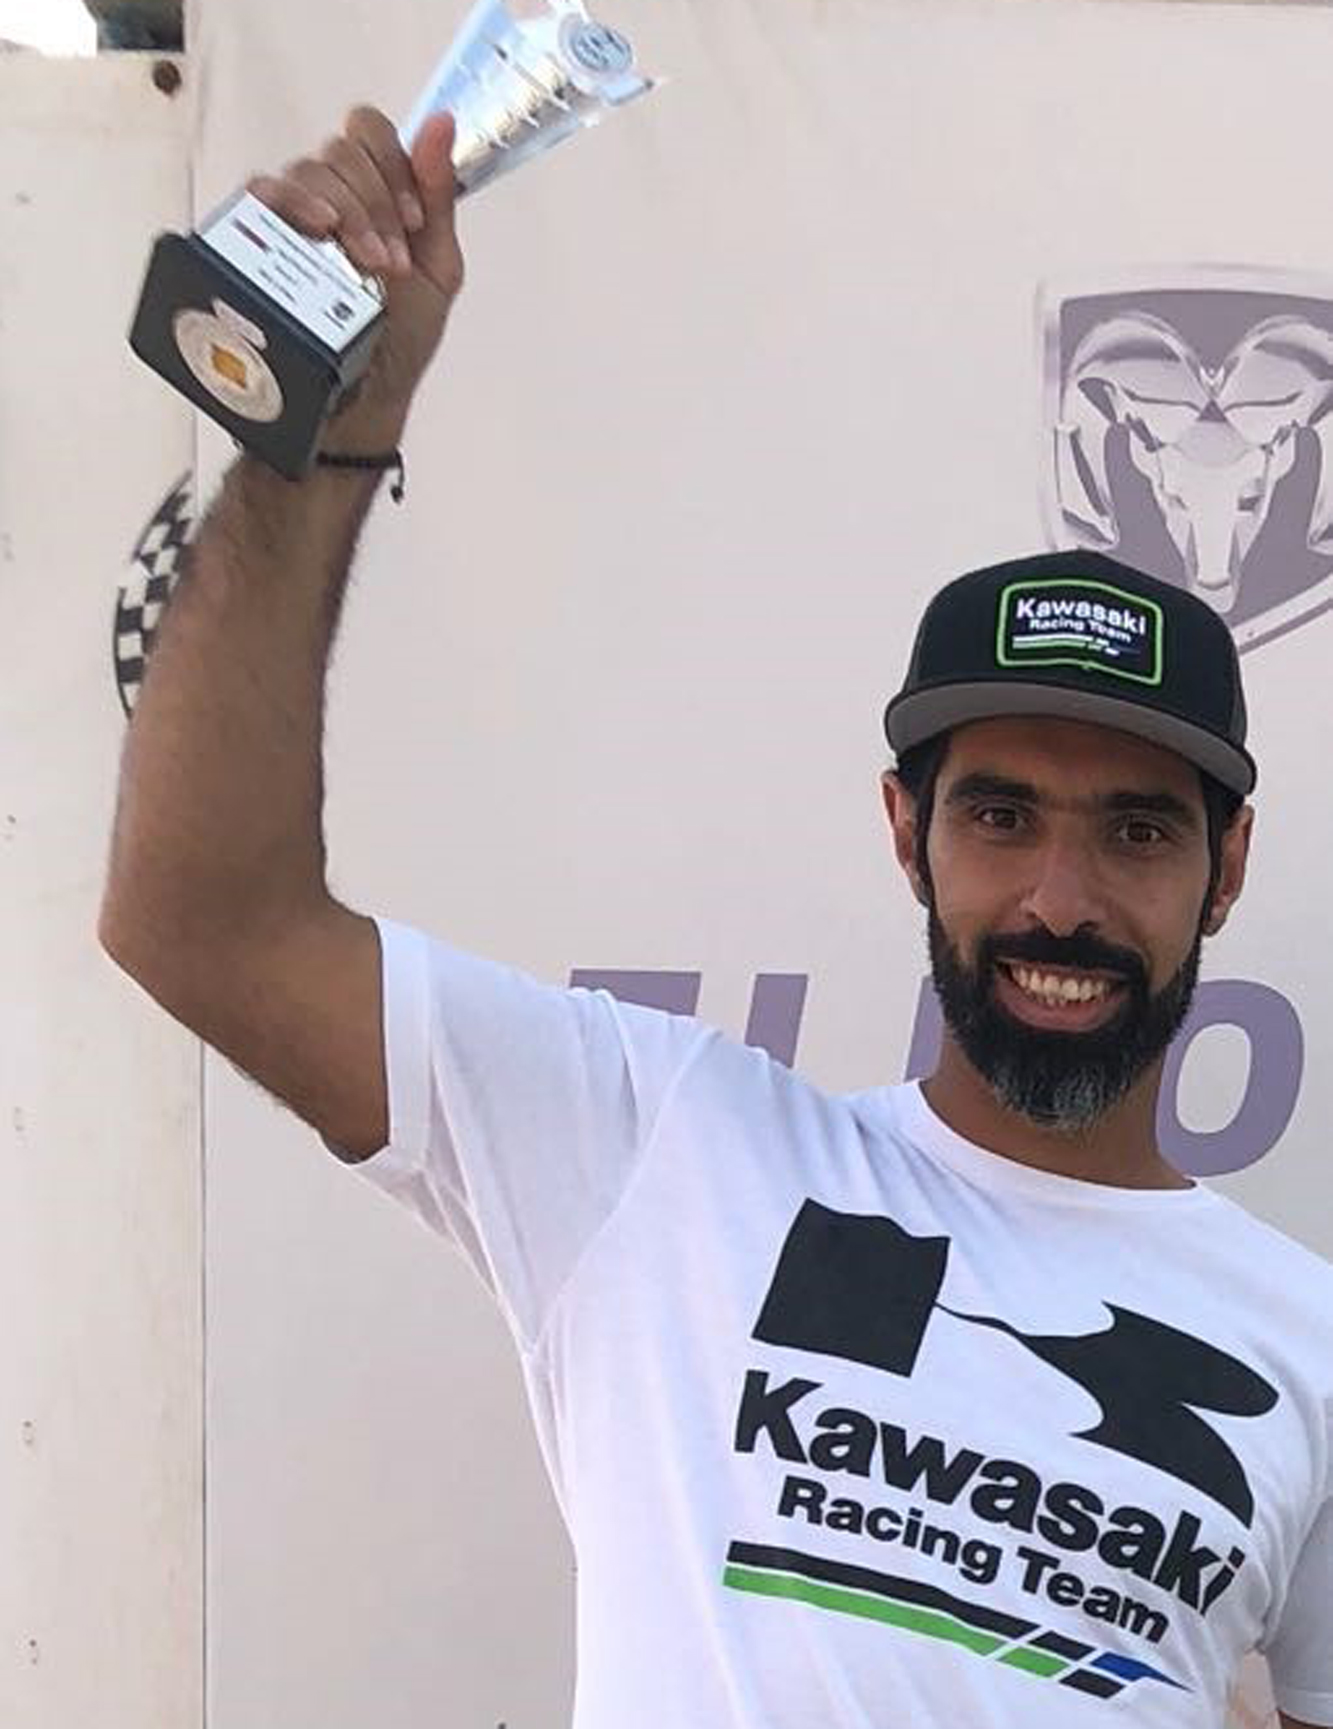 Kuwaiti racer Abdullah Al-Shatti